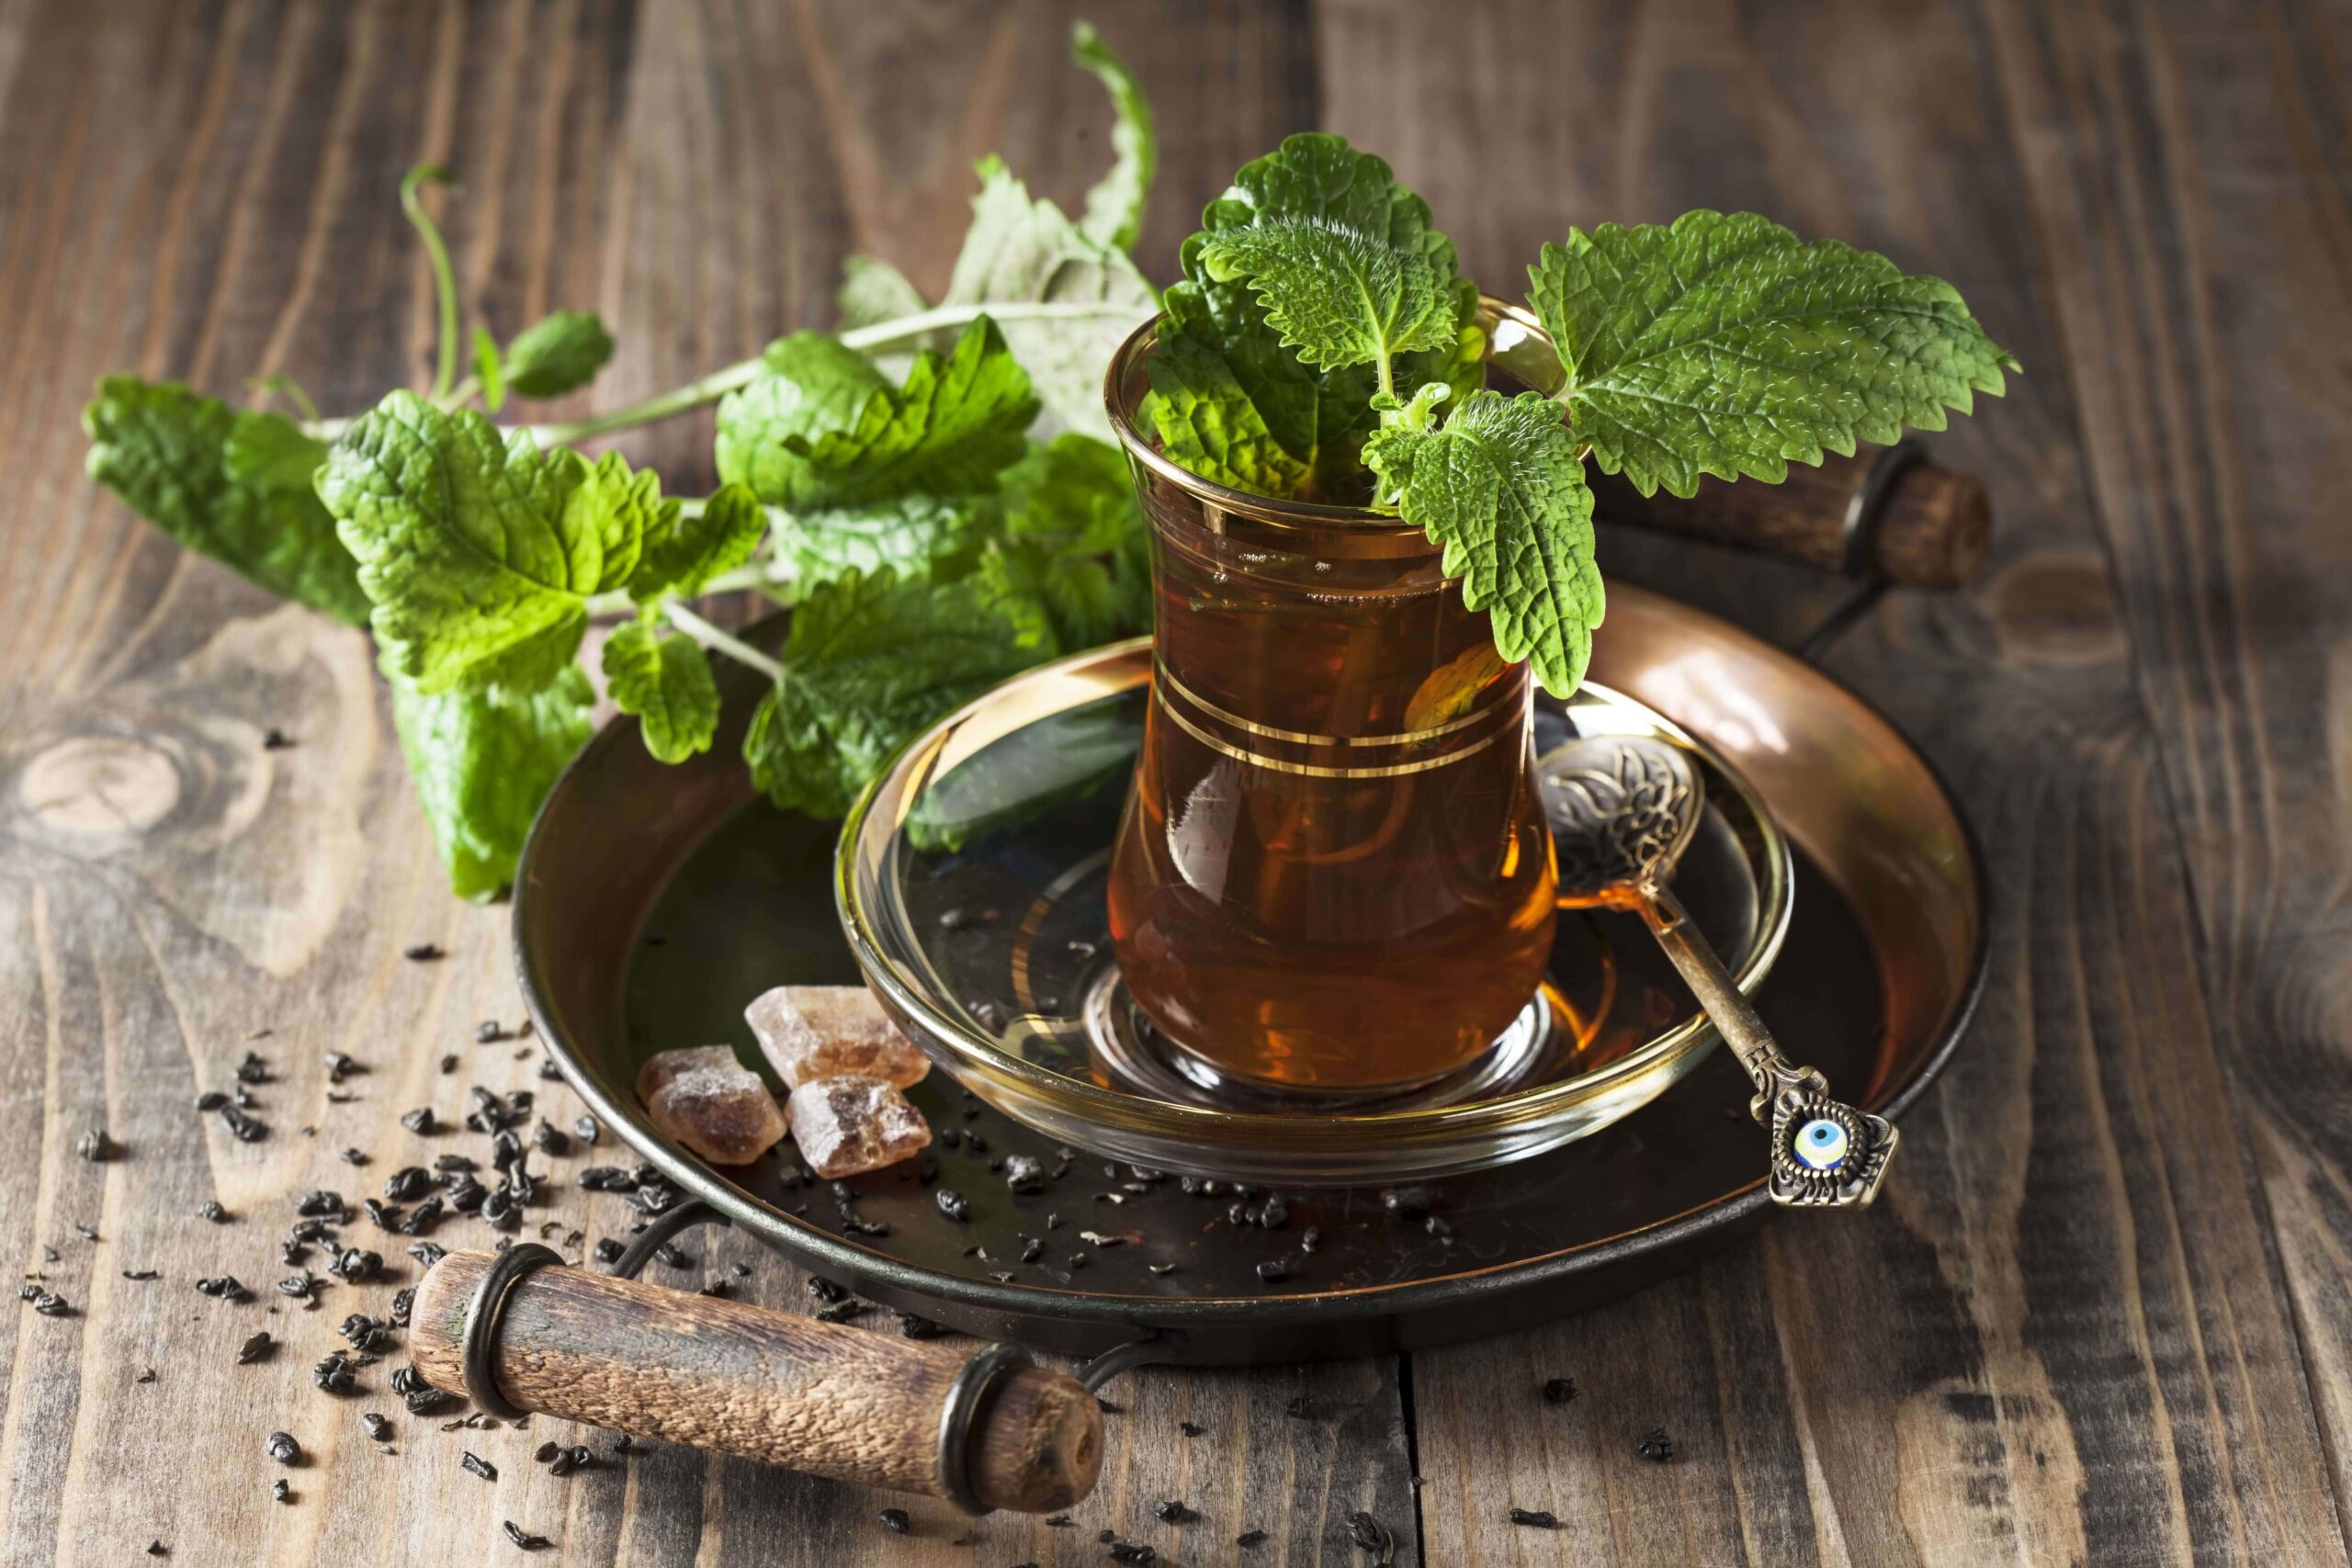 Chá de menta fresca — símbolo e tradição para os marroquinos